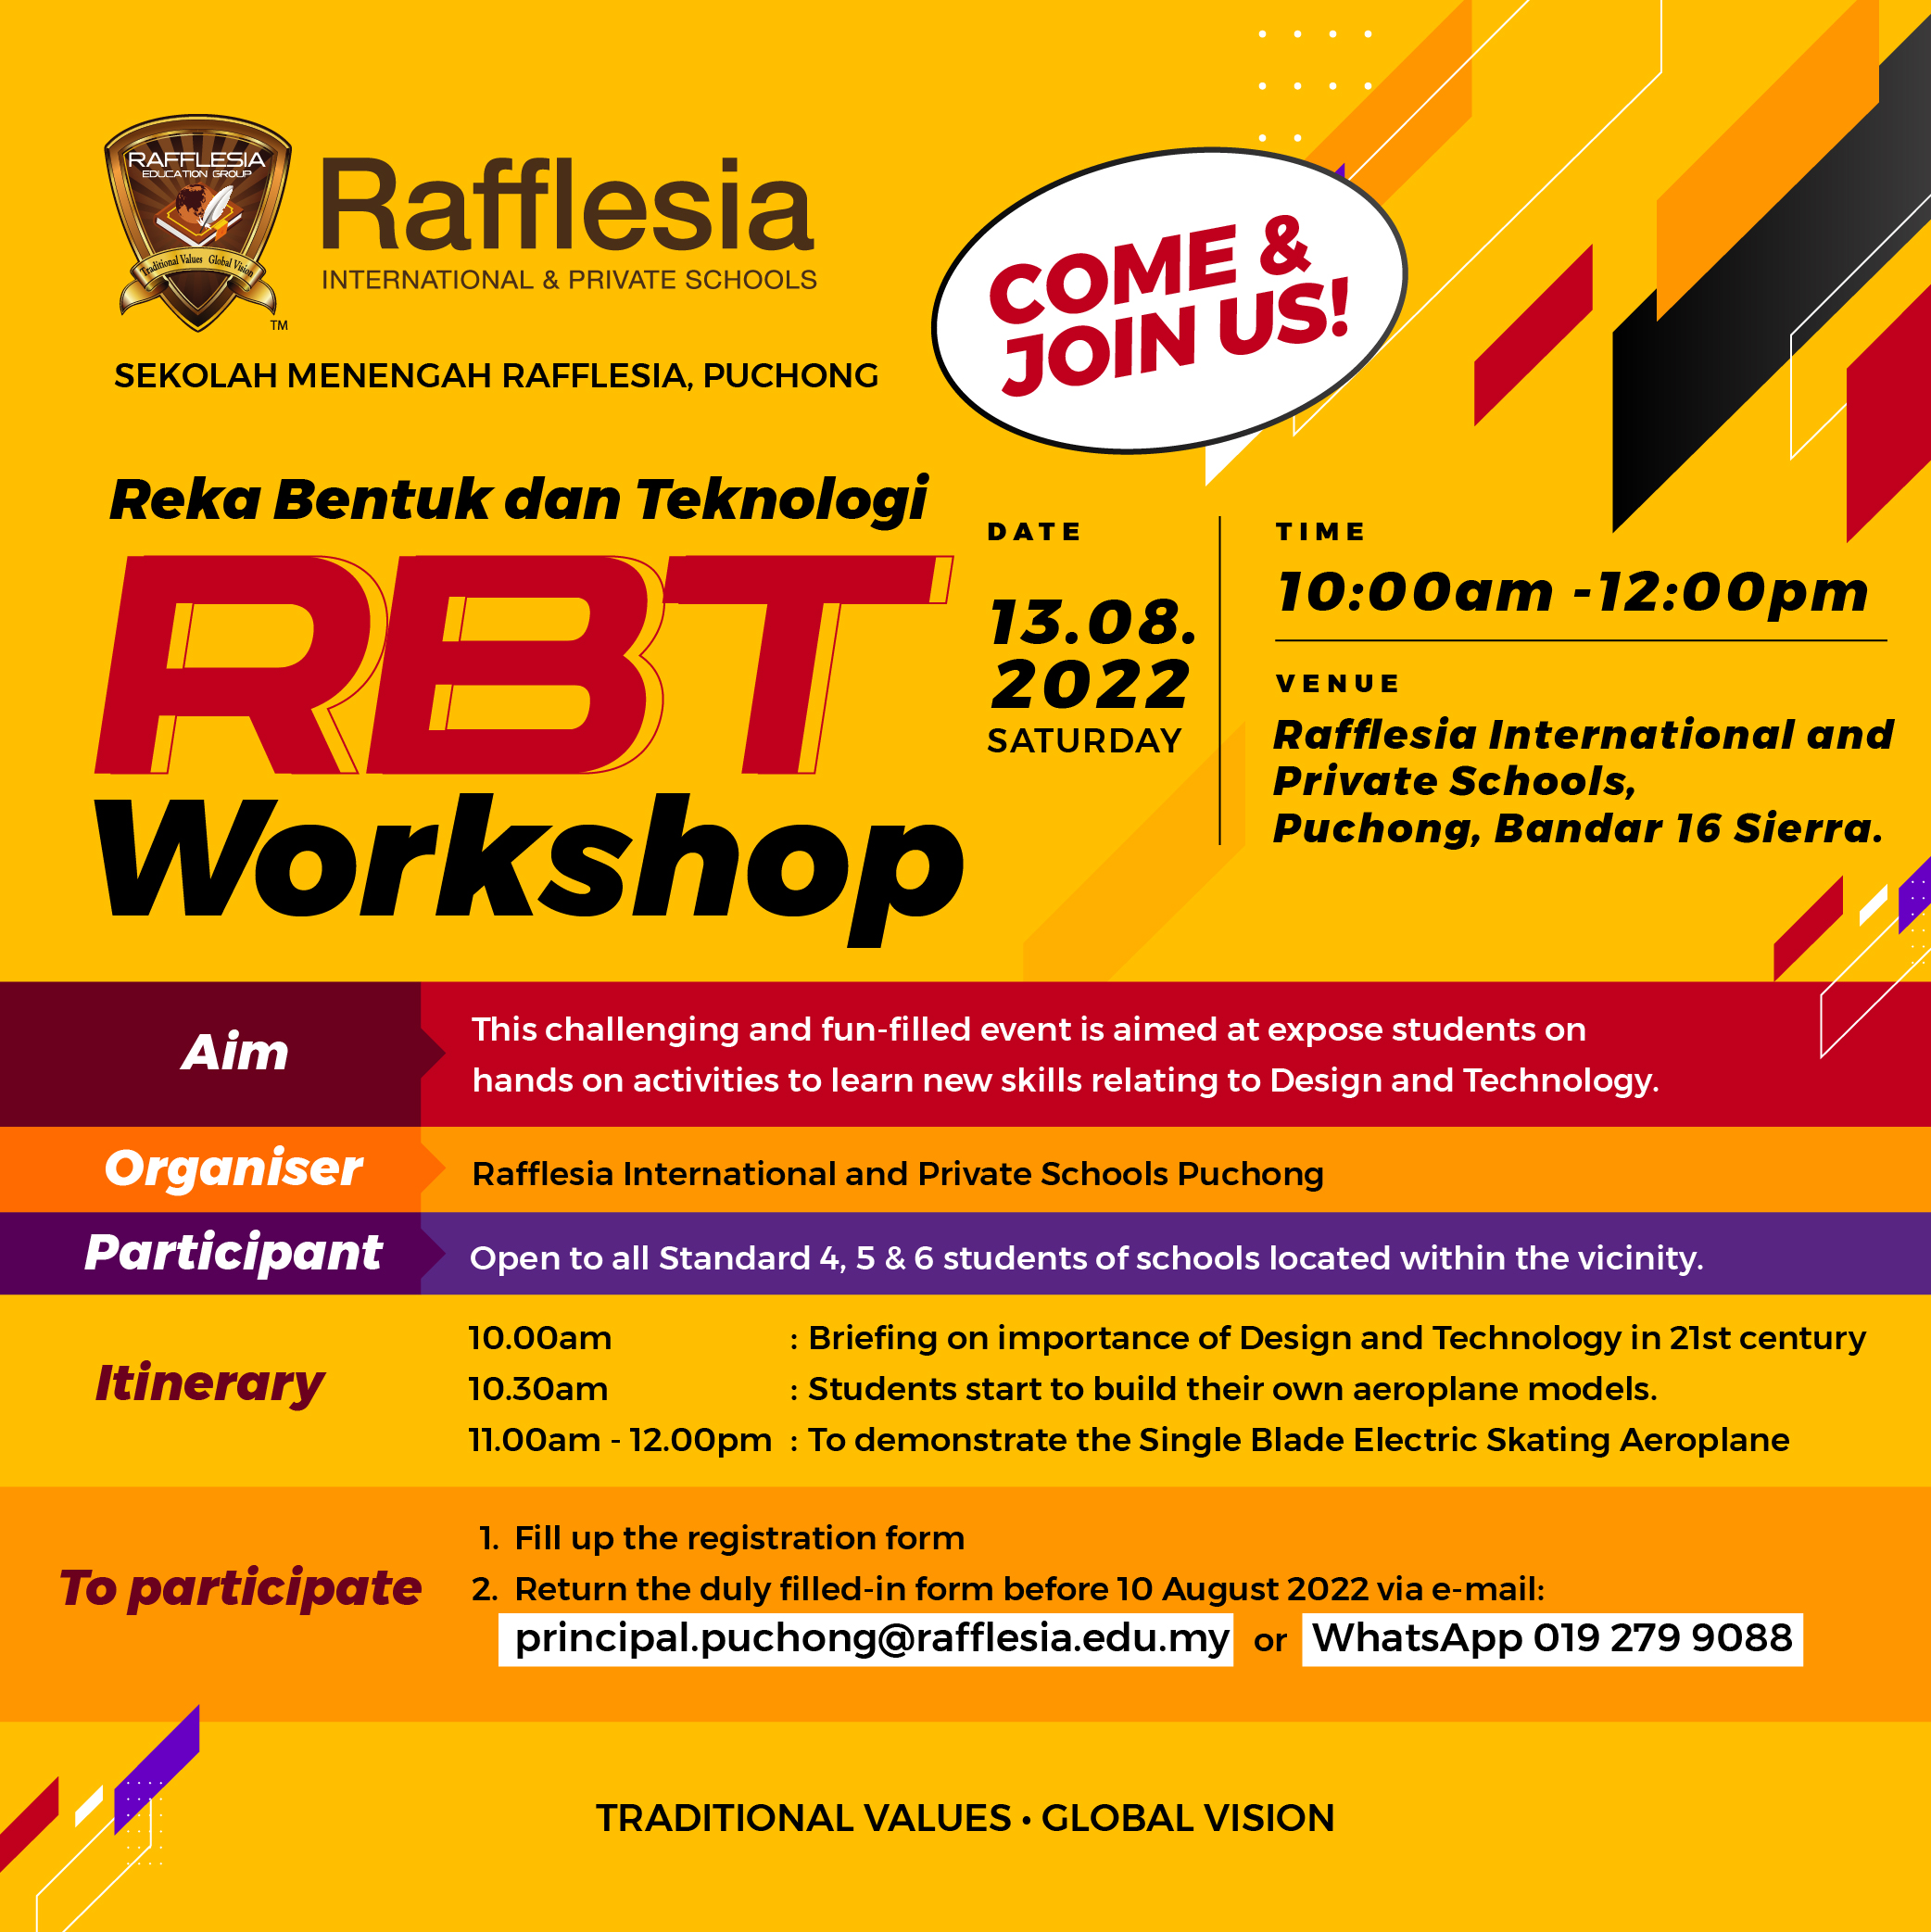 Reka Bentuk dan Teknologi (RBT) Workshop